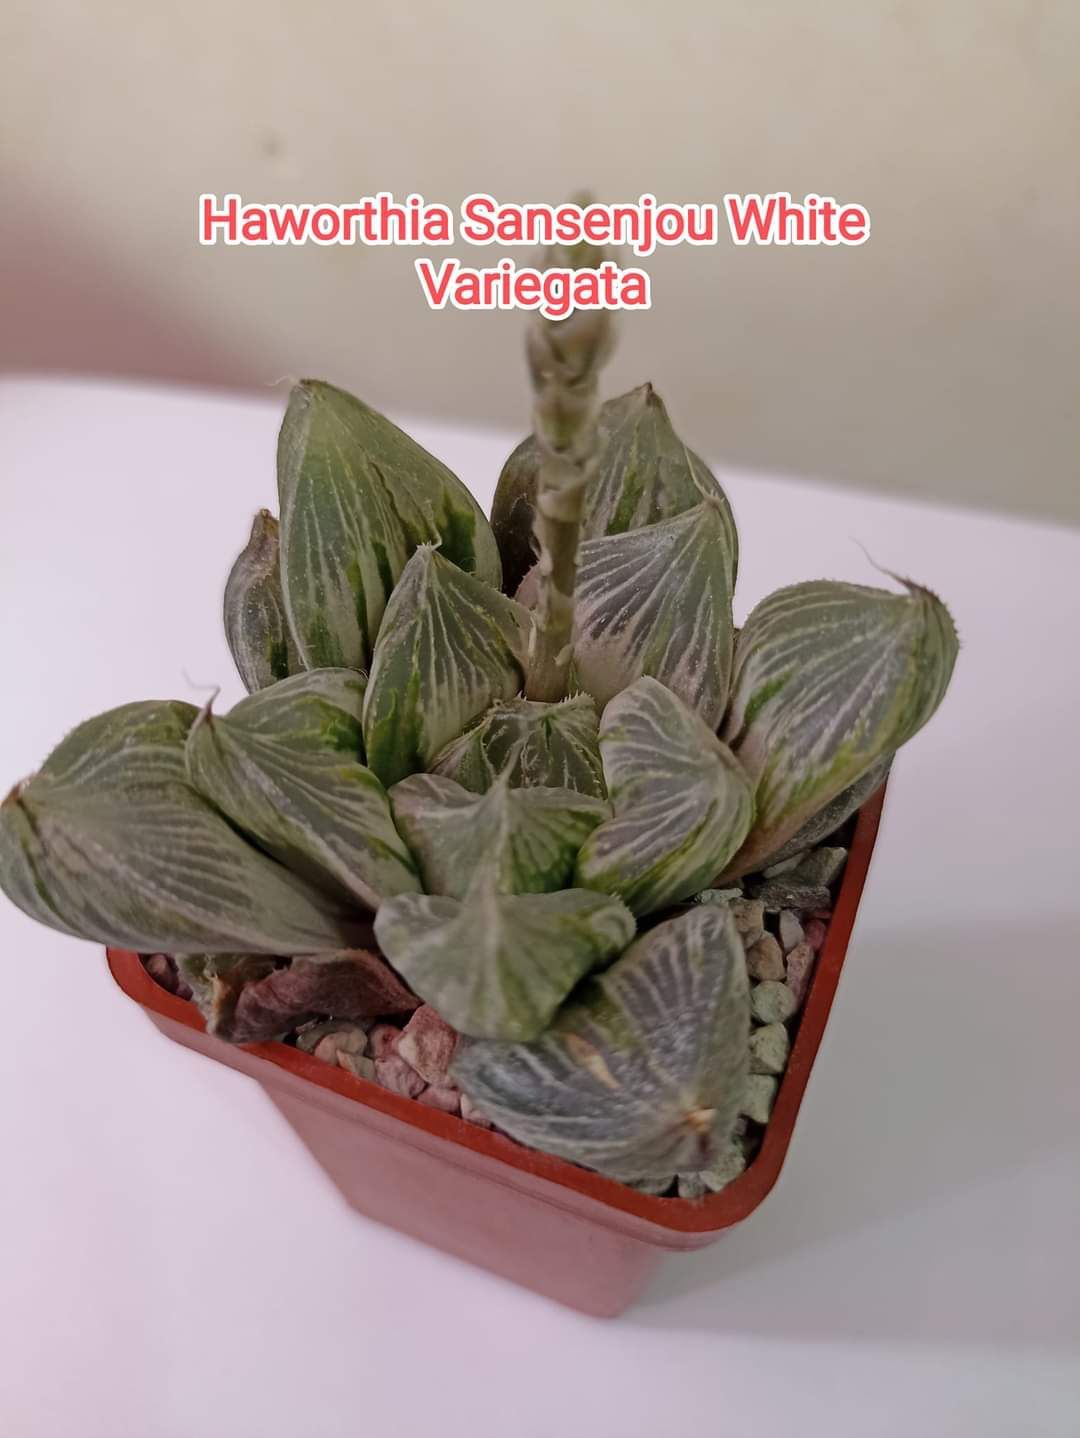 Haworthia Sansenjou White Variegata